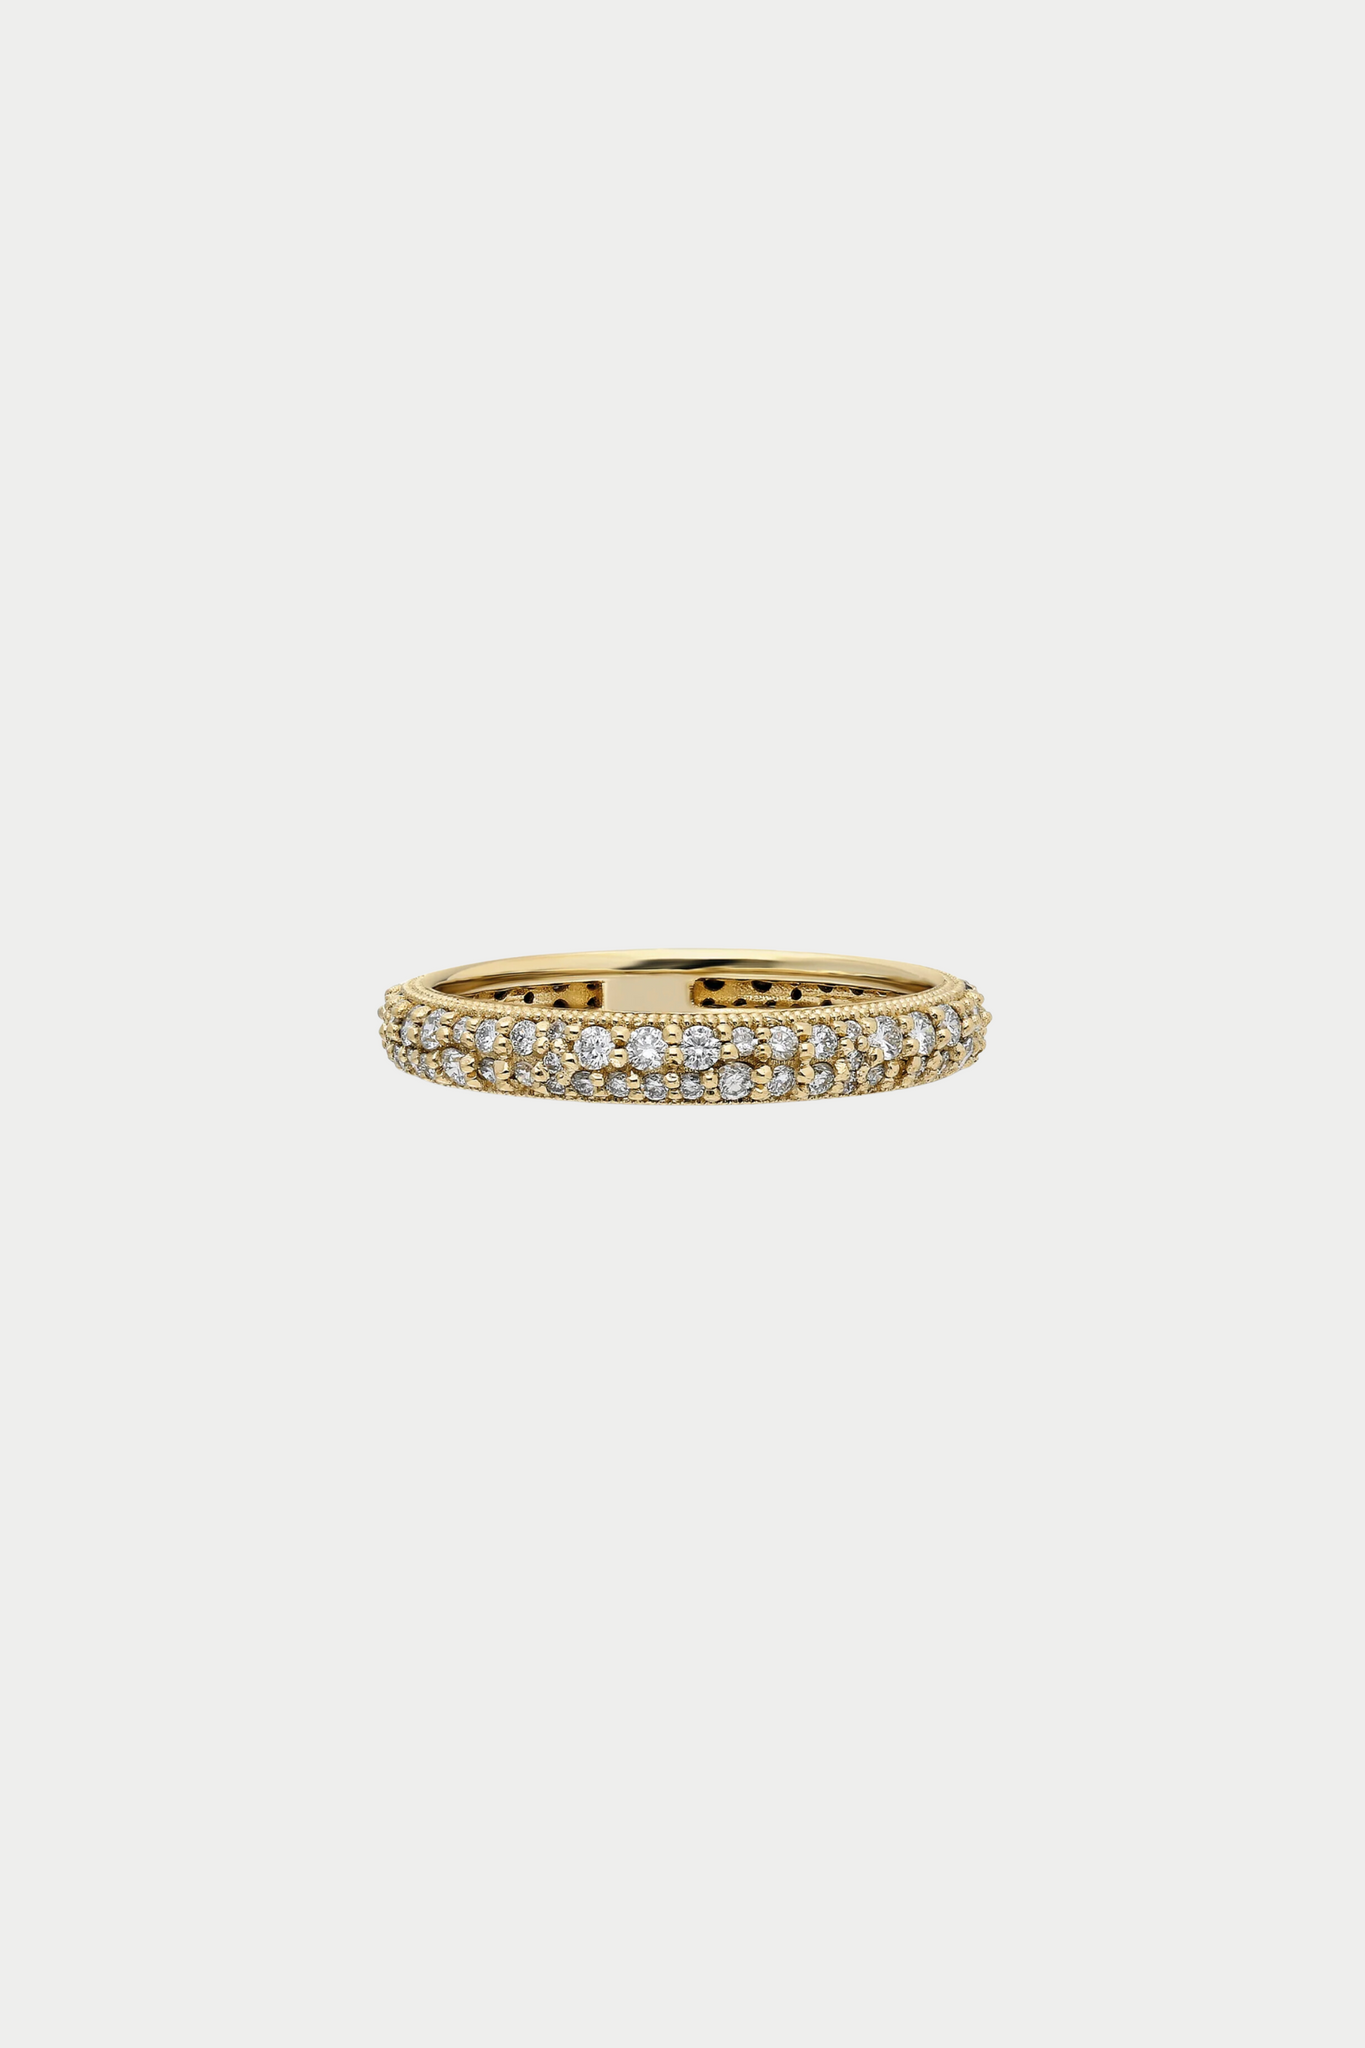 ita - “Eterno” Tuxedo Pave Ring, Black & White Diamonds